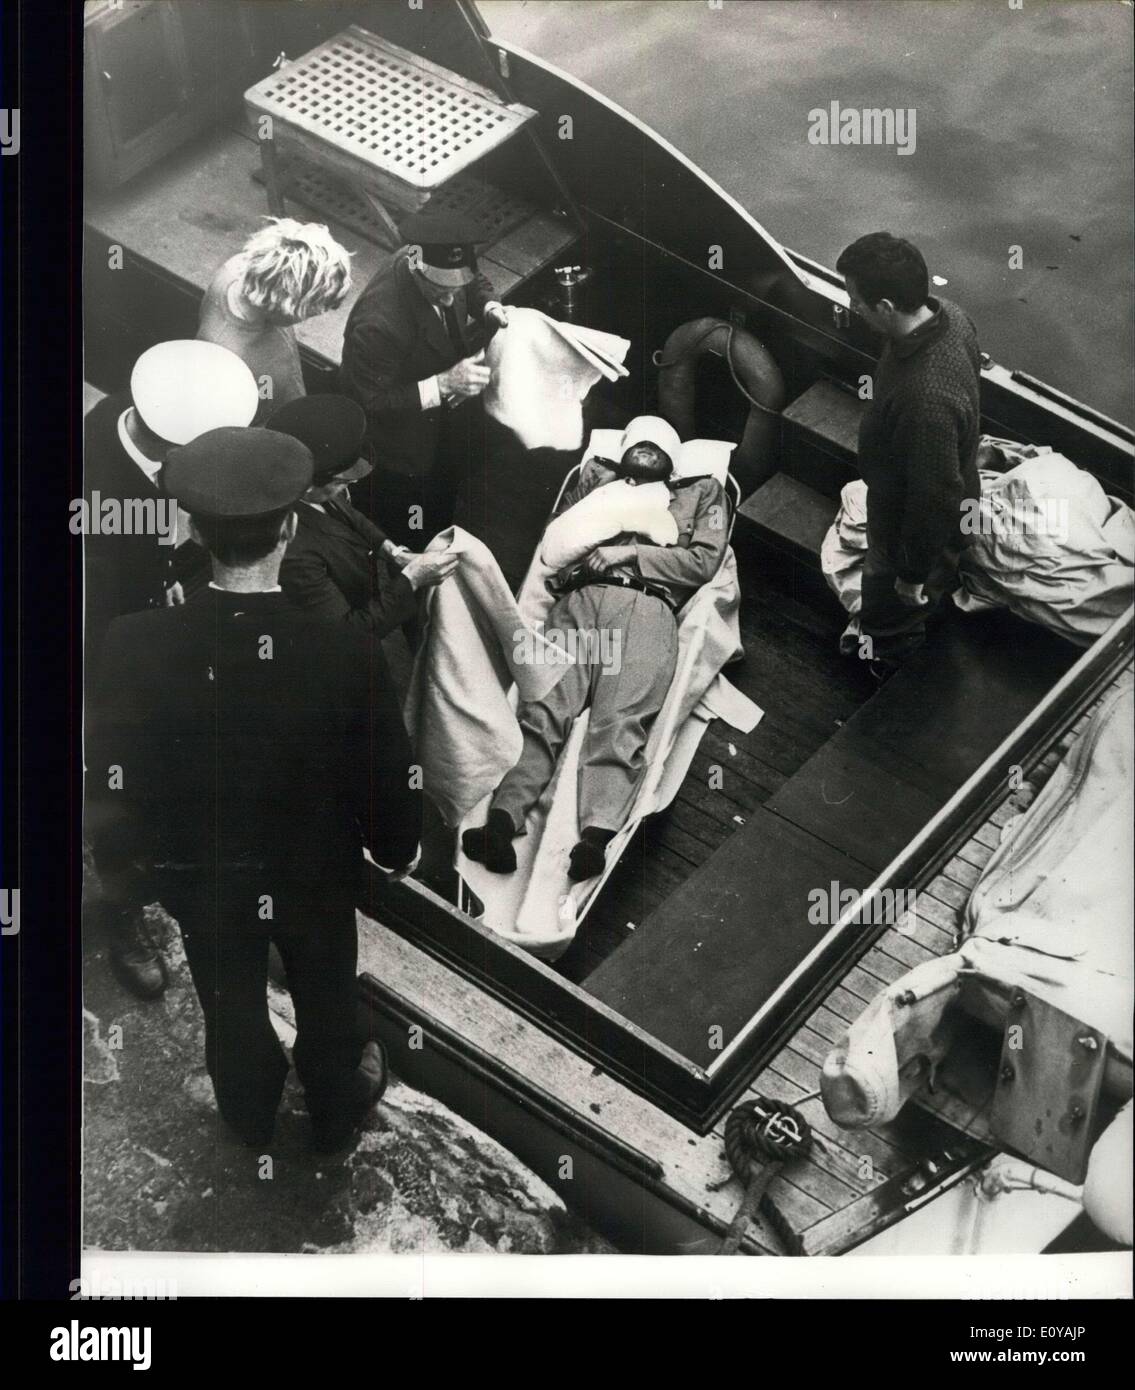 Sept. 15, 1969 - Unfall auf der Regina Maris. Verzögerungen nach Australien zu segeln. Ein mock Feuergefecht zwischen zwei Segelschiffe in Plymouth Sound am Samstag, wurde gestoppt, nachdem eine Kanone geladen hatte für seinen fünften Schuss vom Deck des norwegischen Barkentine Regina Maris, wenn die Ladung im Fass platzen und in sein Gesicht explodierte. Bootsmann Callan erhielt umfangreiche Kürzungen und Verbrennungen an Gesicht und Armen. Nach der Erstversorgung brachte ihn ein Motorboot an Millbay Docks, wo ihm eine wartenden Krankenwagen ins Krankenhaus eingeliefert Stockfoto